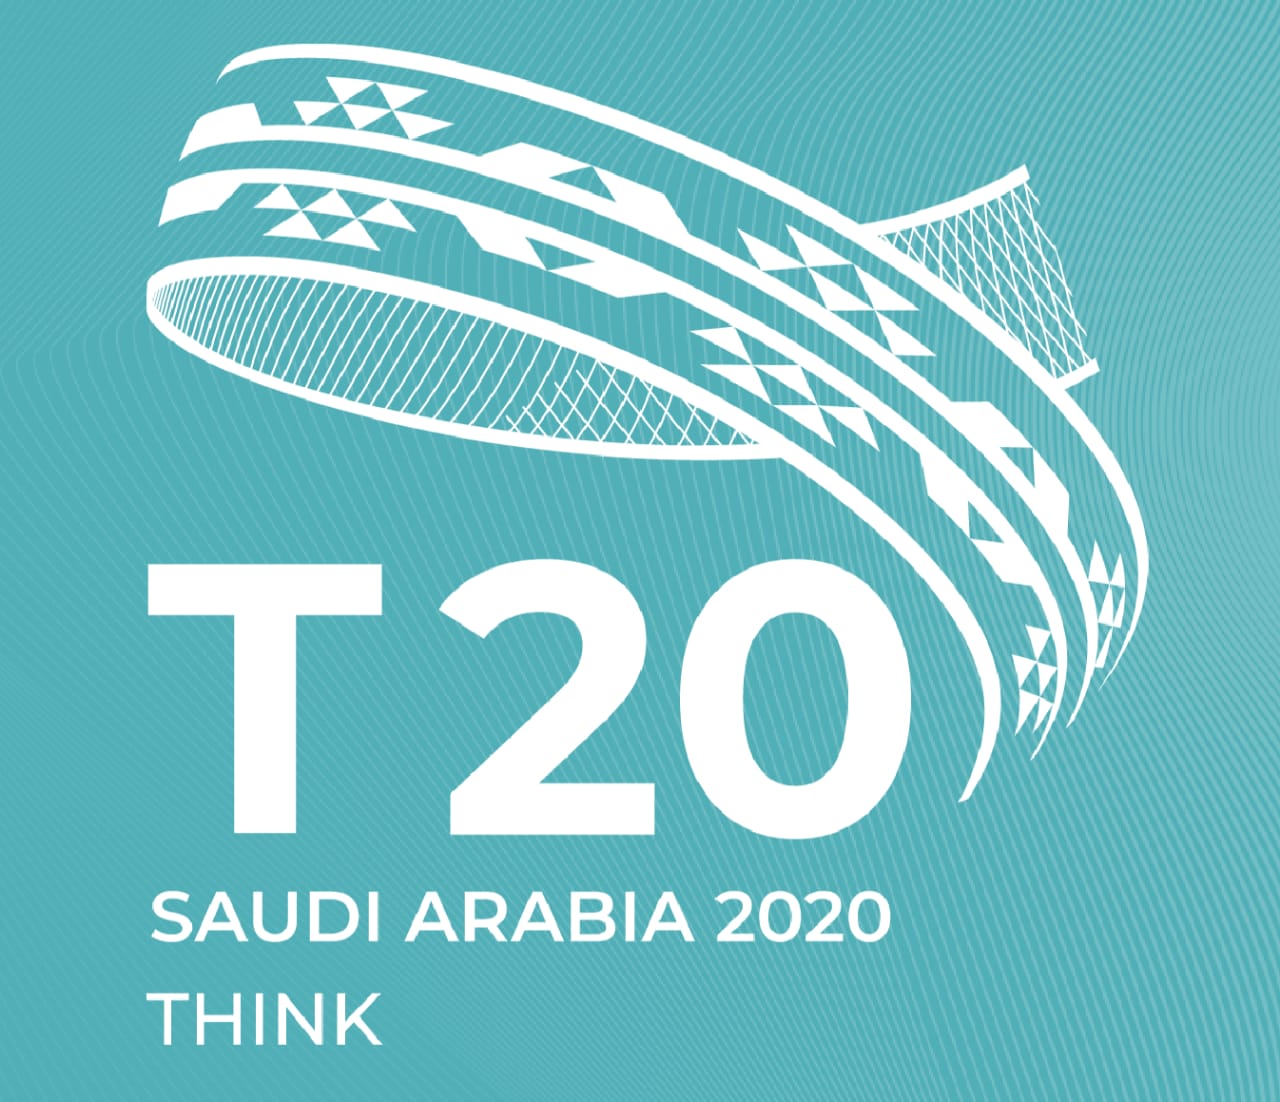 الرياض : انطلاق قمة مجموعة الفكر (T20) لبحث العديد من القضايا المرتبطة بدول ‎مجموعة العشرين